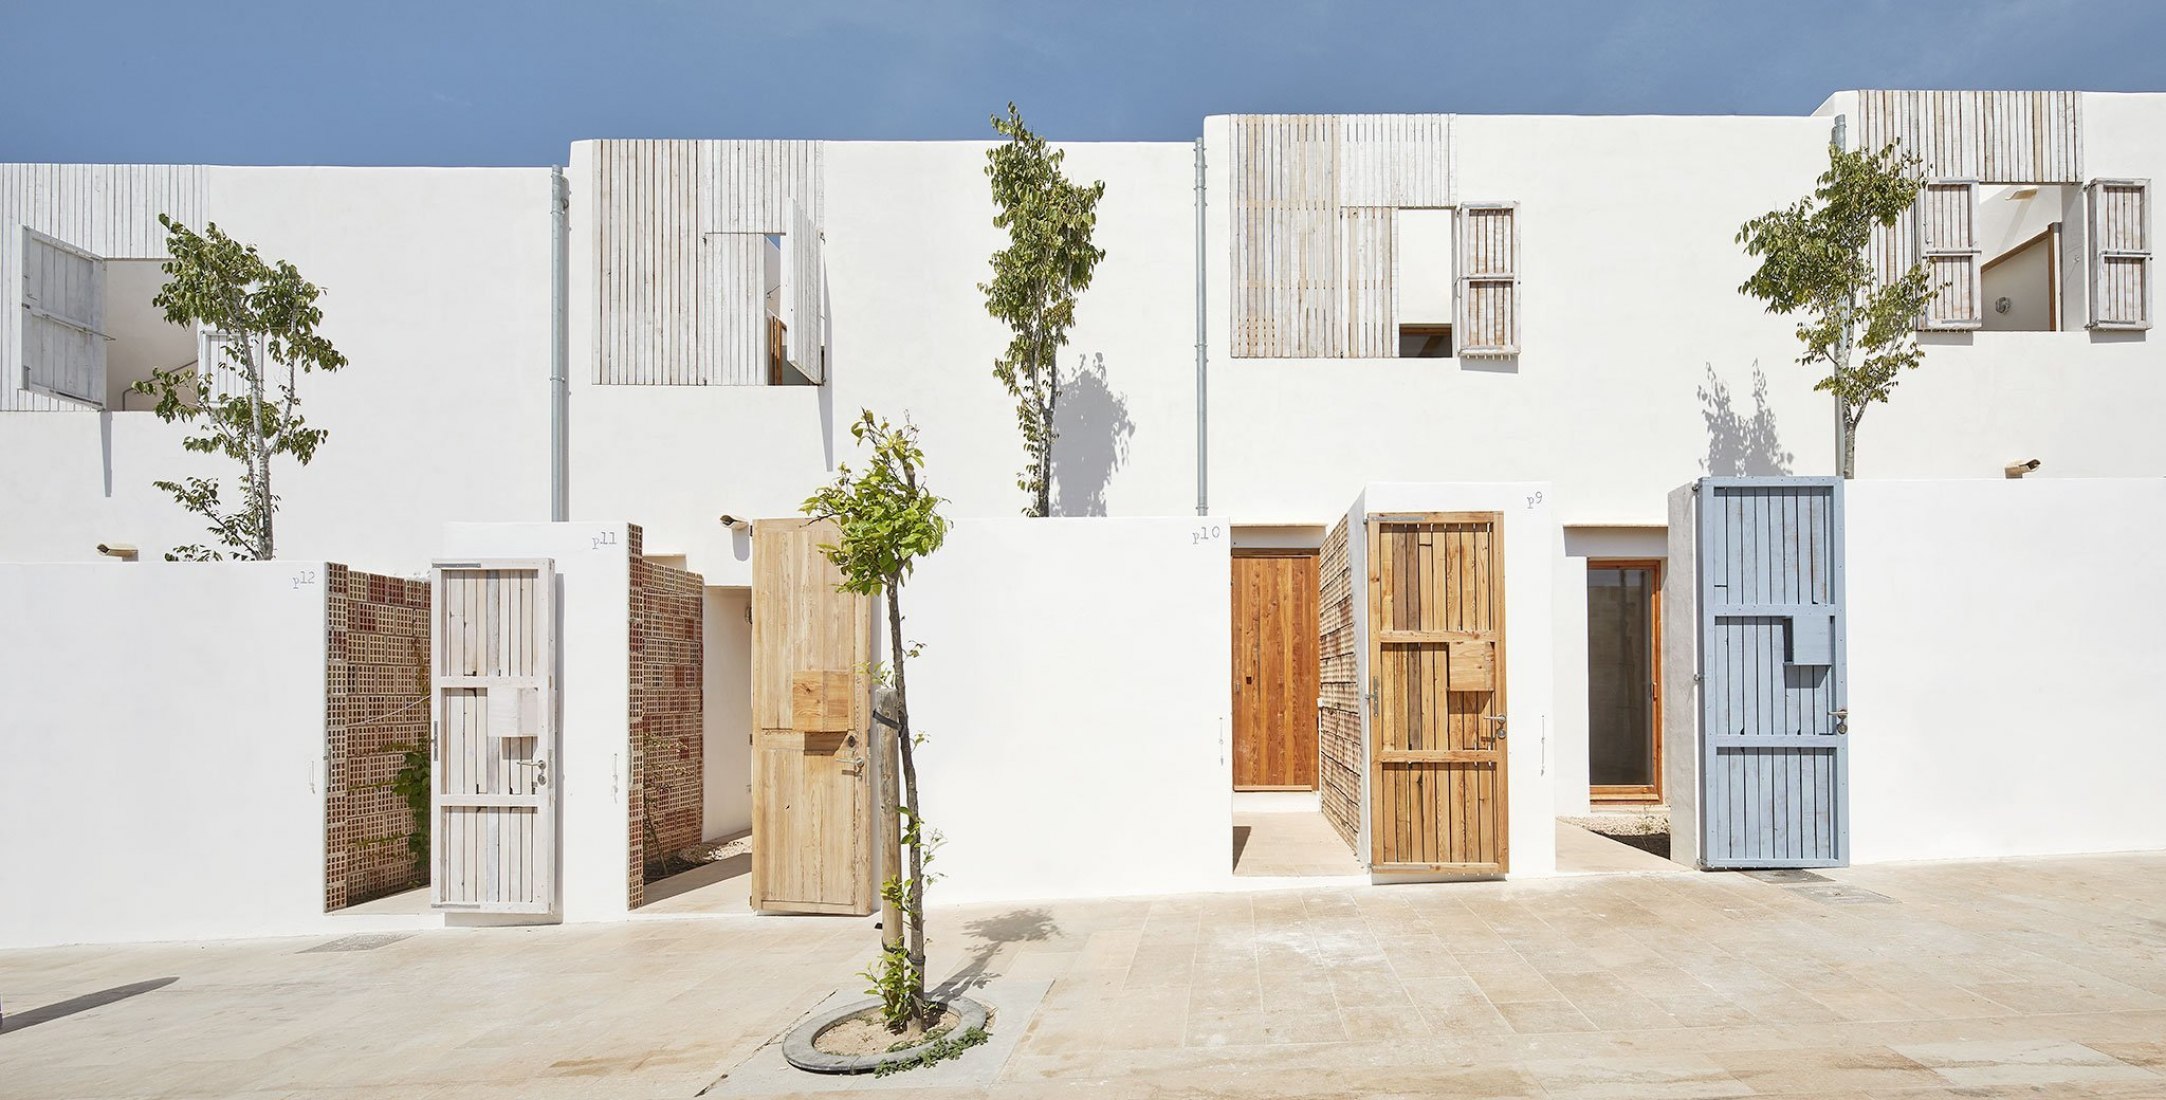 Vista exterior. Vivienda social en Formentera. Proyecto de Adaptación al Cambio Climático financiado por la Unión Europea. Fotografía por José Hevia